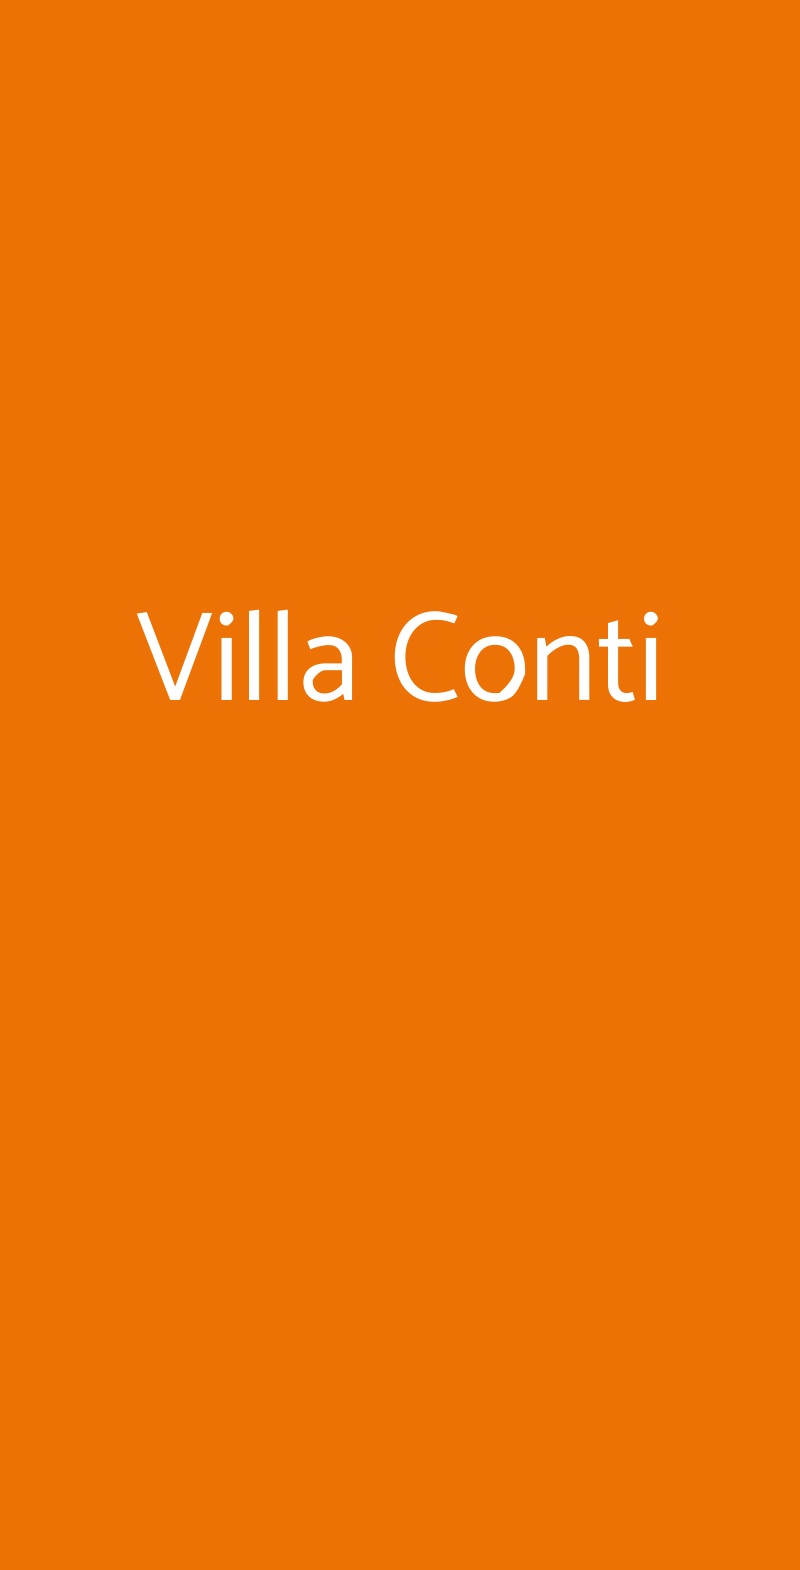 Villa Conti Chianchitta-pallio menù 1 pagina